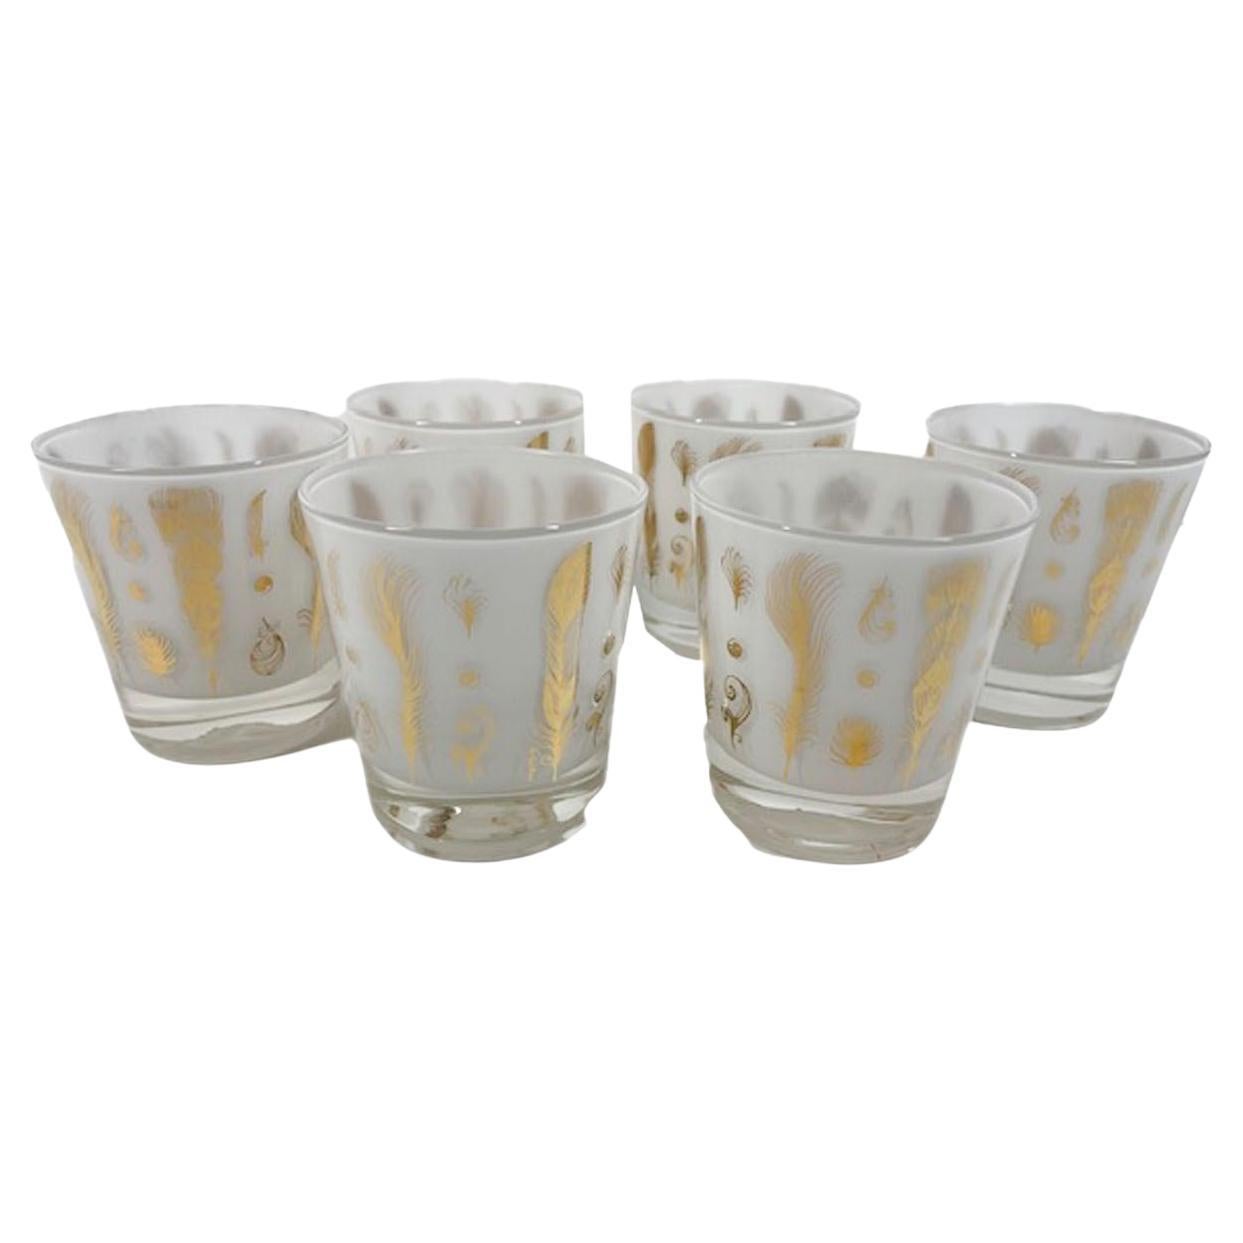 Six verres à l'ancienne du milieu du siècle dernier, conçus par Fred Press, avec des plumes en or 22 carats sur verre transparent et intérieur blanc givré.